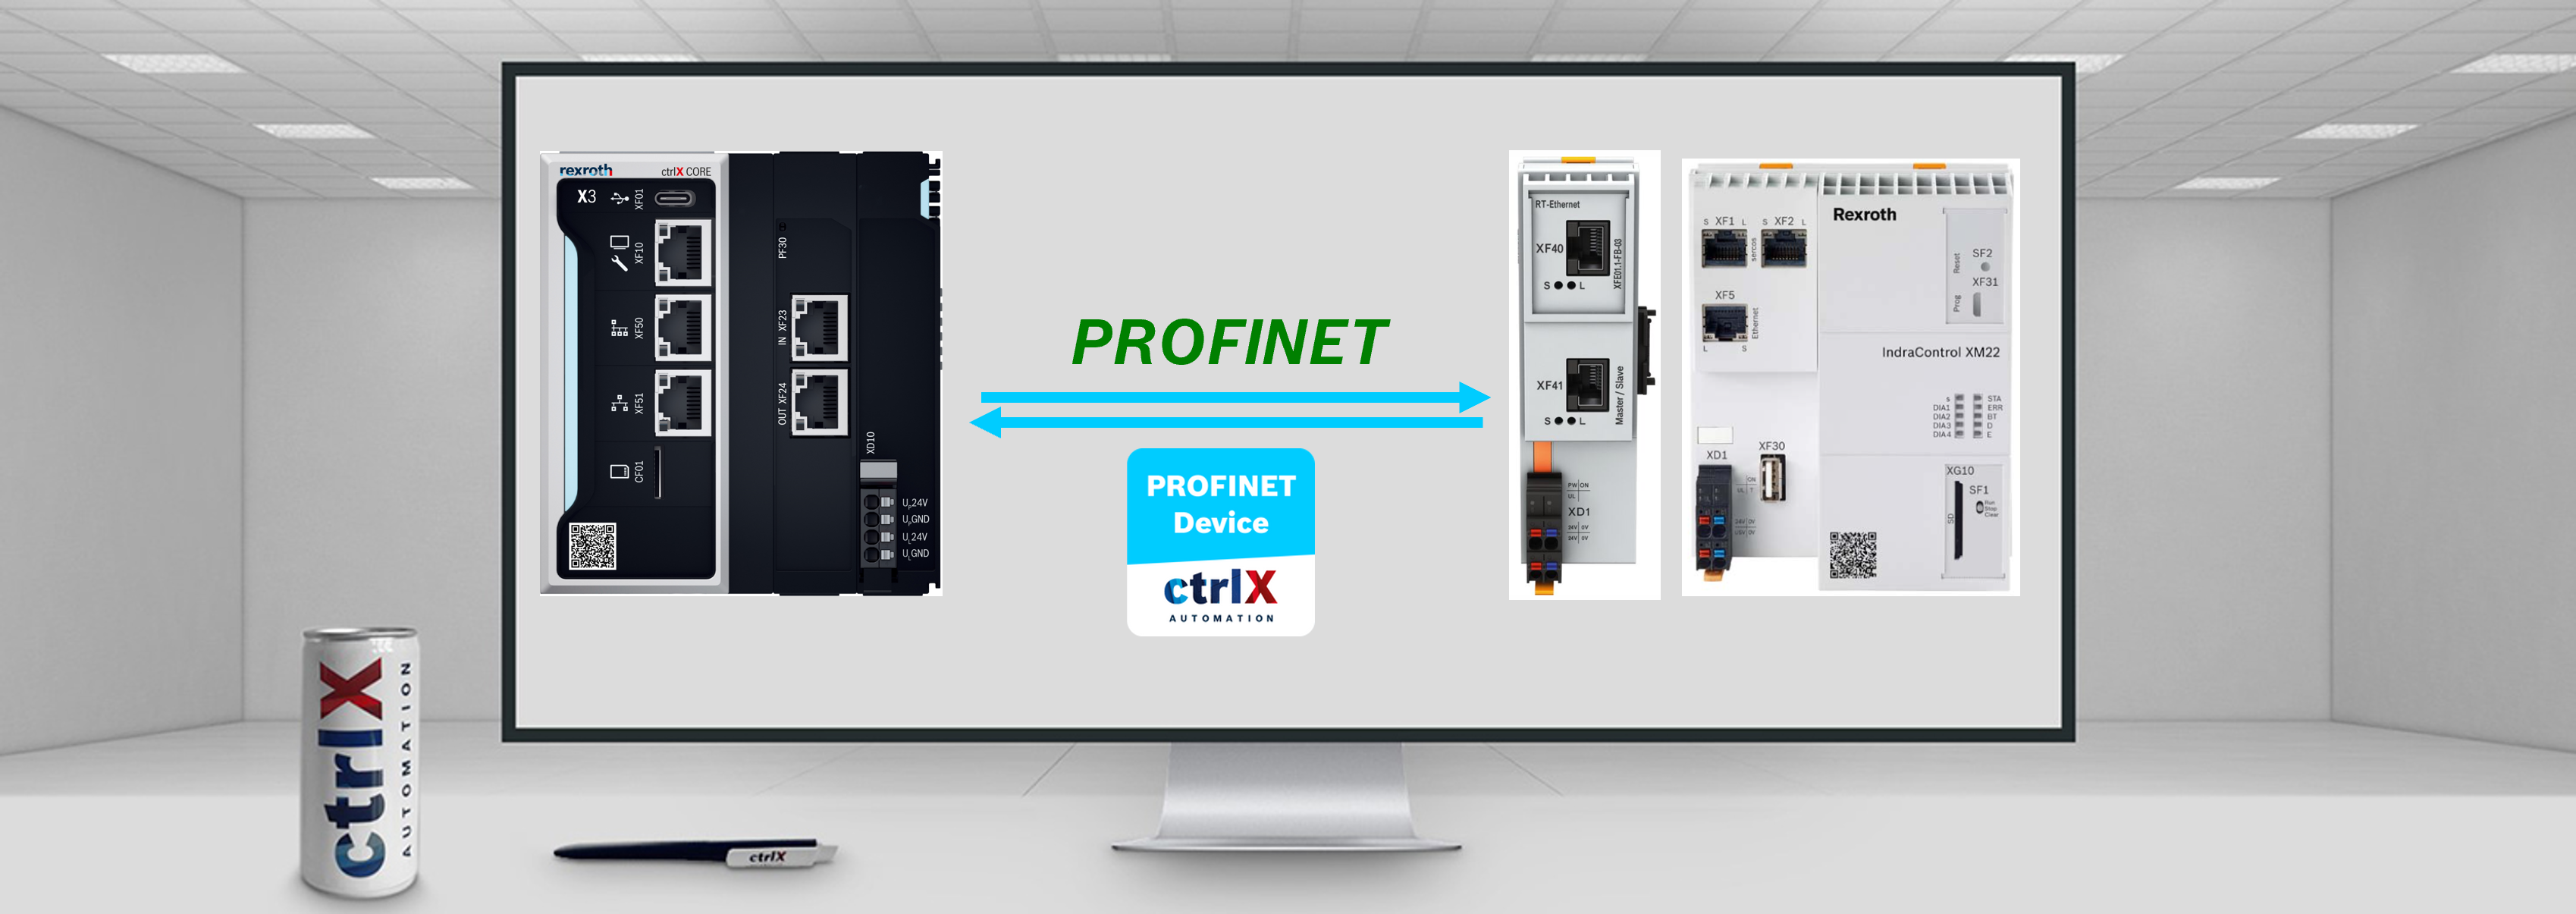 IndraControl XM21 ctrlX CORE plus X3 Profinet connection